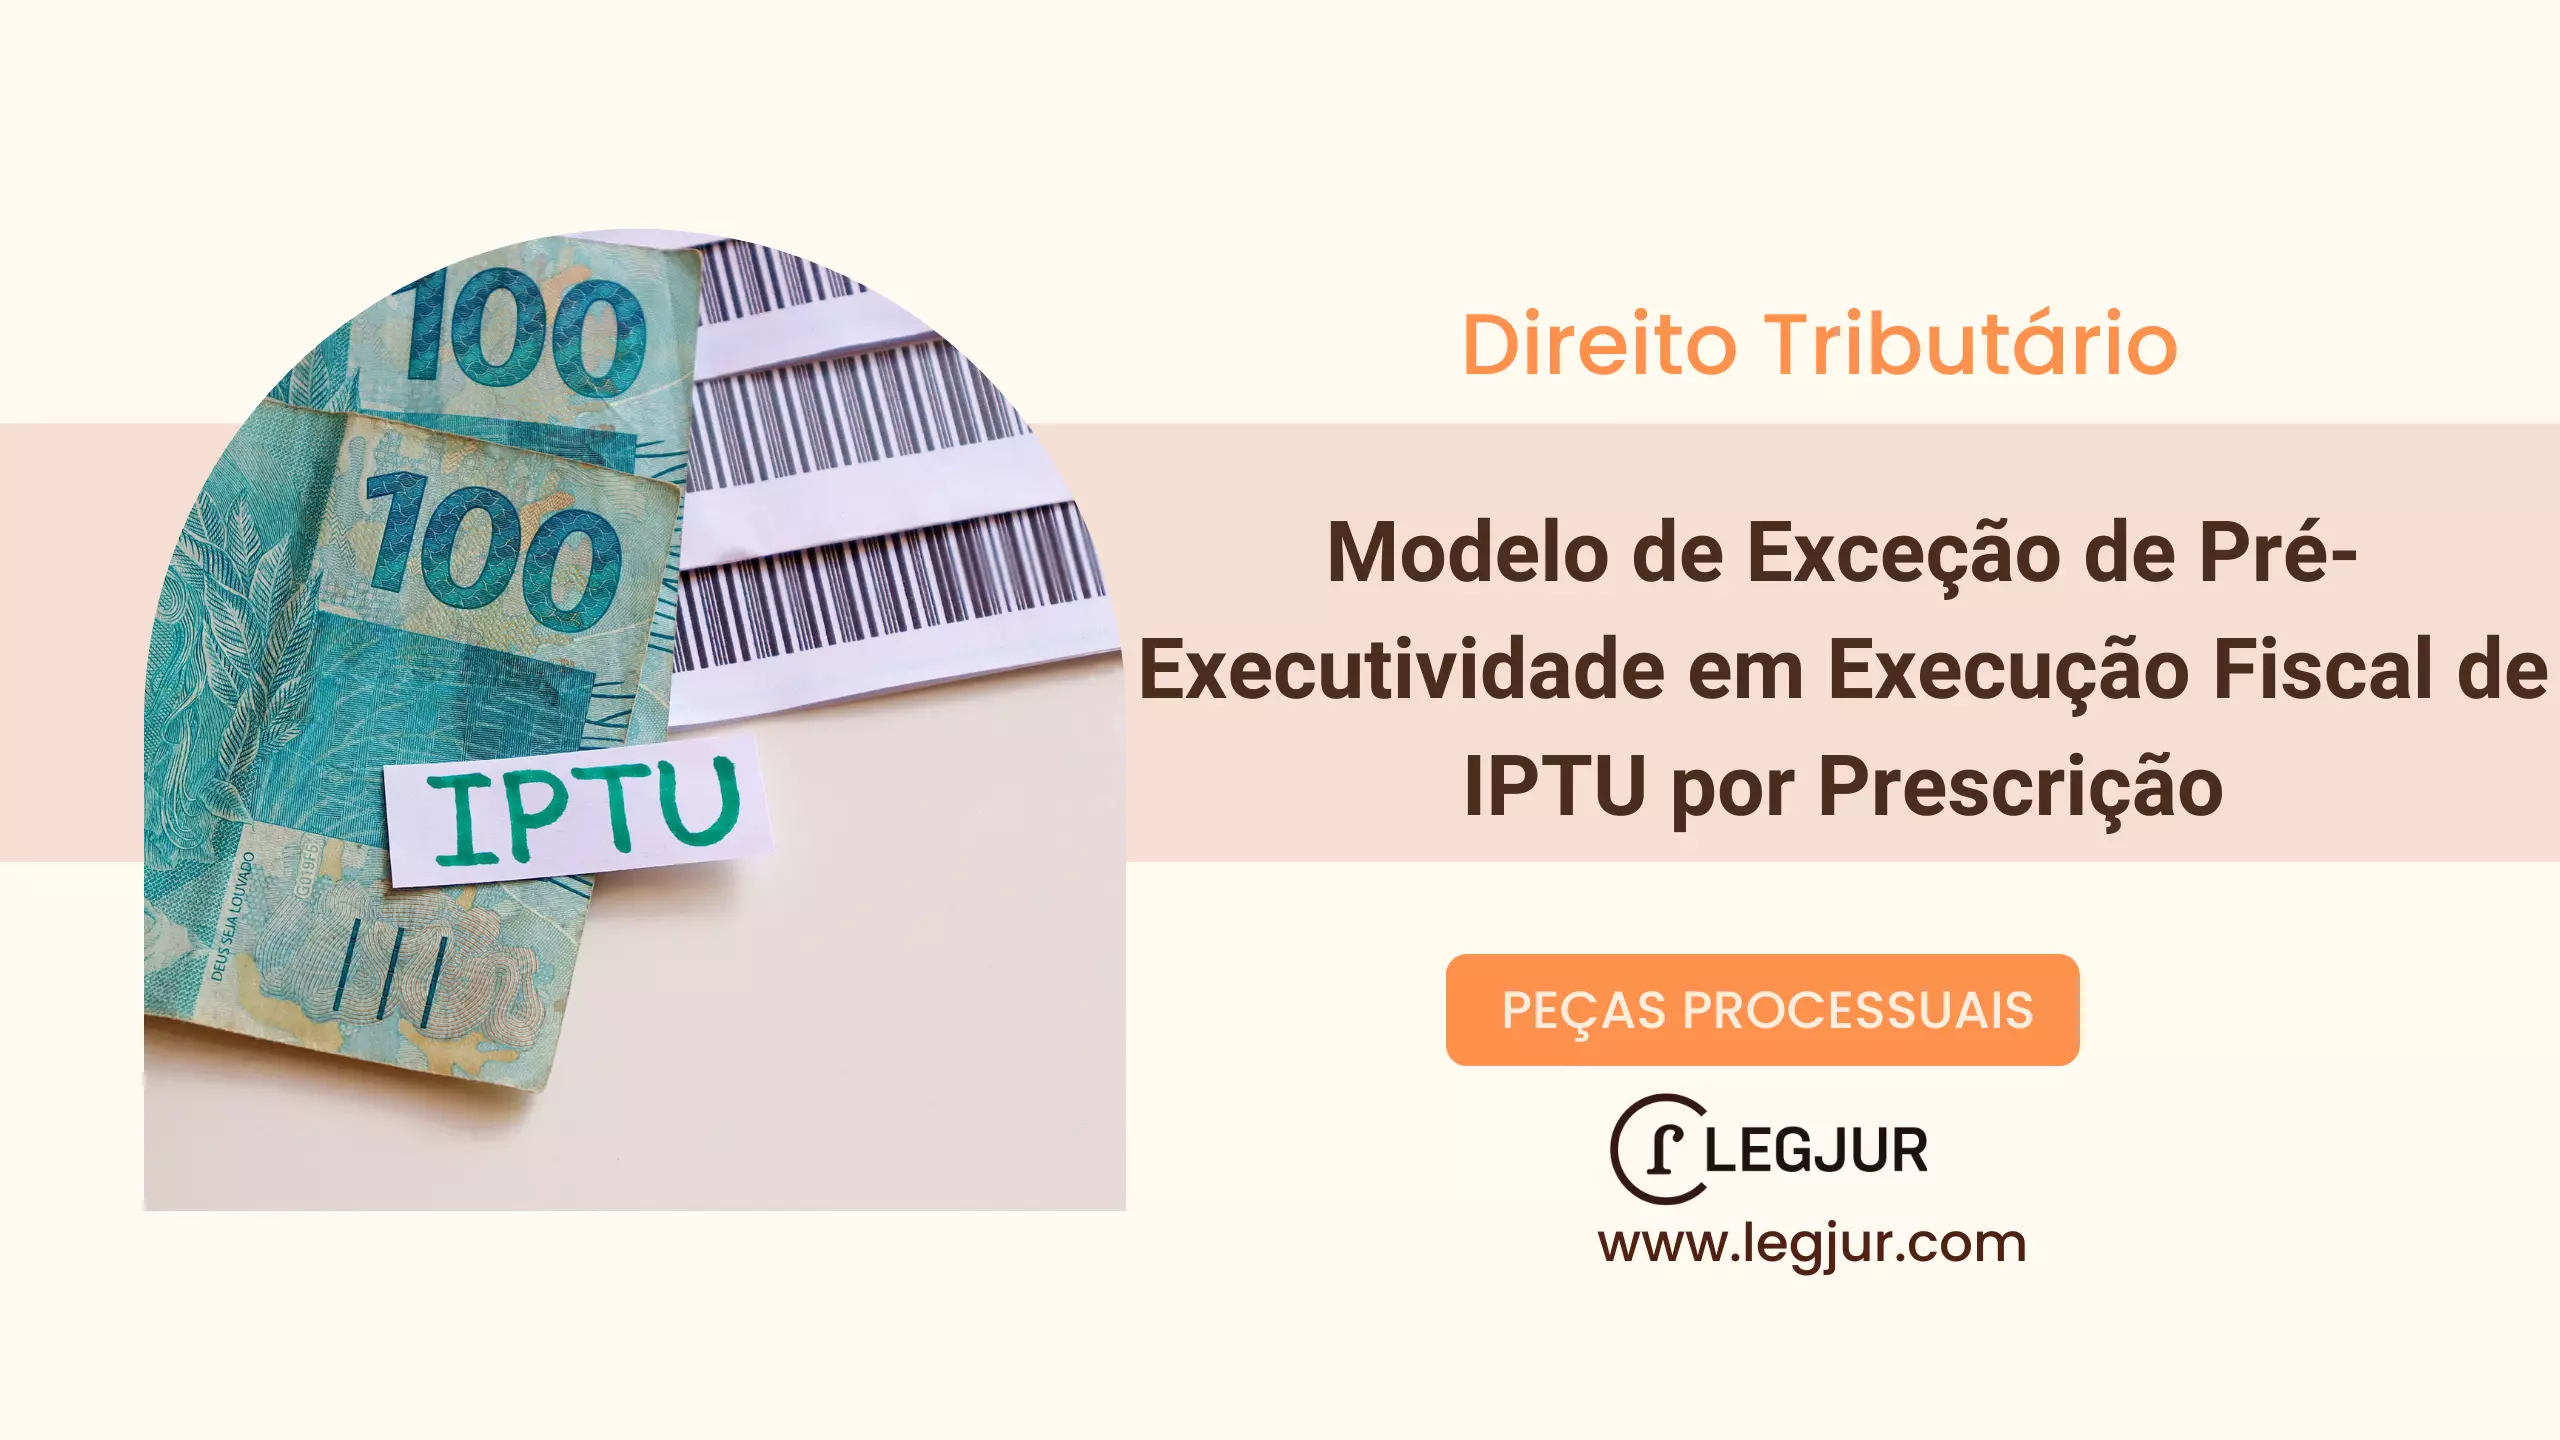 Modelo de Exceção de Pré-Executividade em Execução Fiscal de IPTU por Prescrição